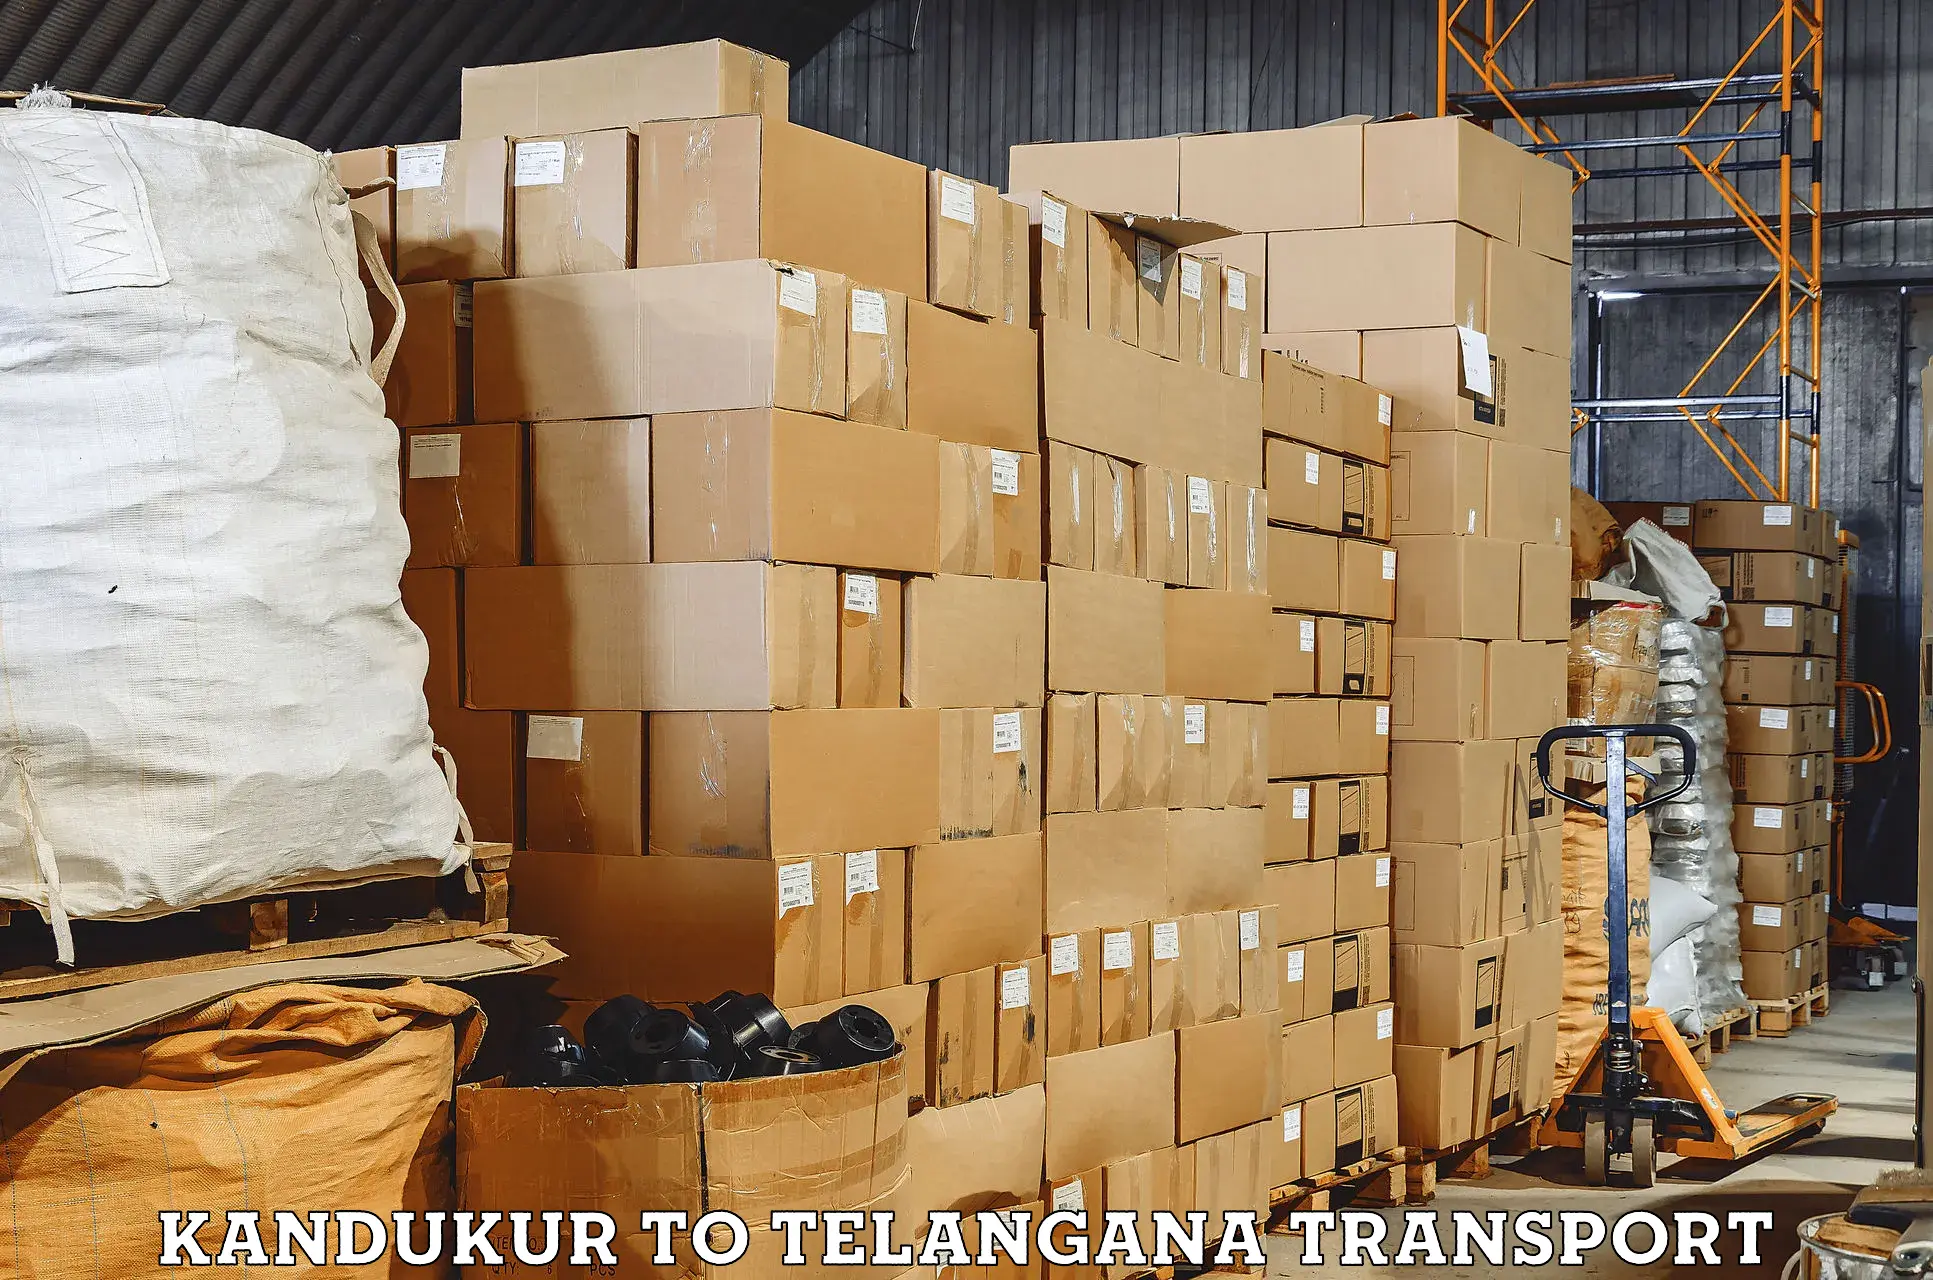 Part load transport service in India Kandukur to Warangal